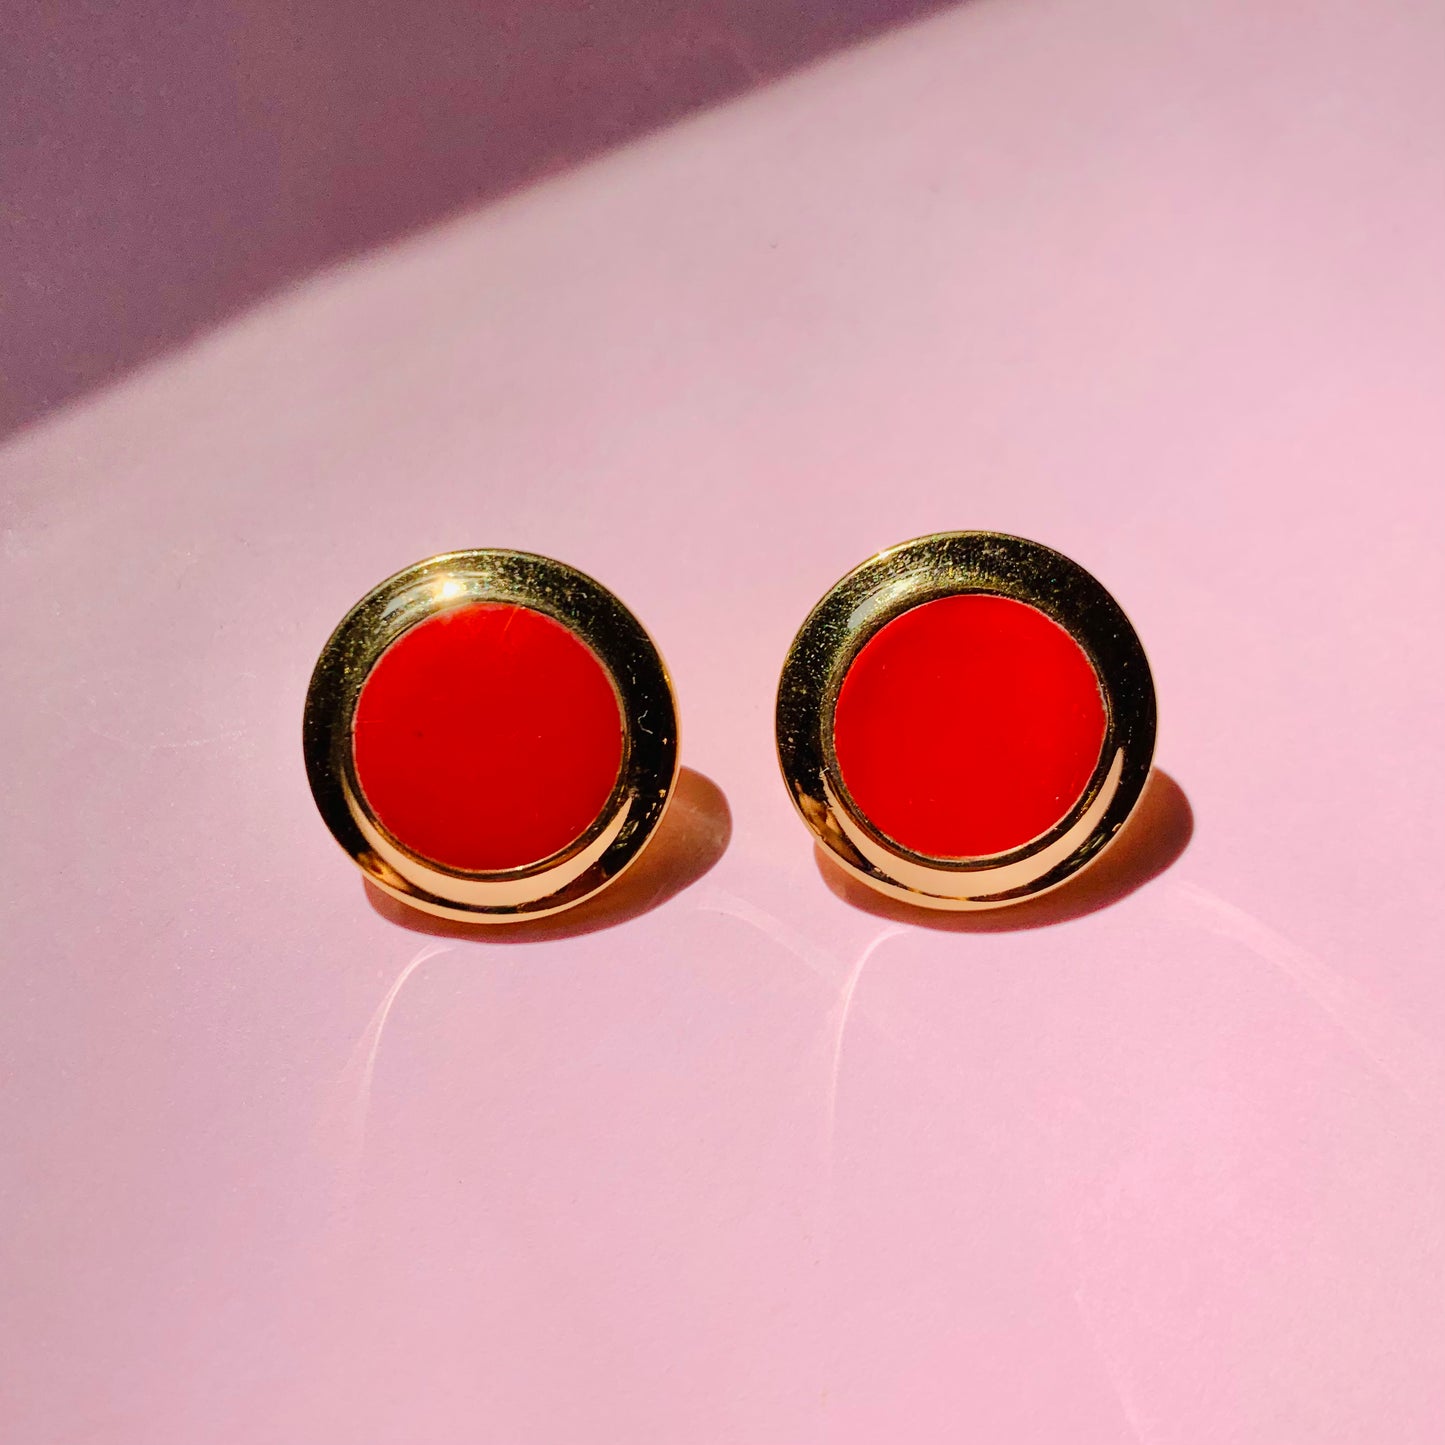 1960s triple plates gold red enamel clip on earrings by Monet